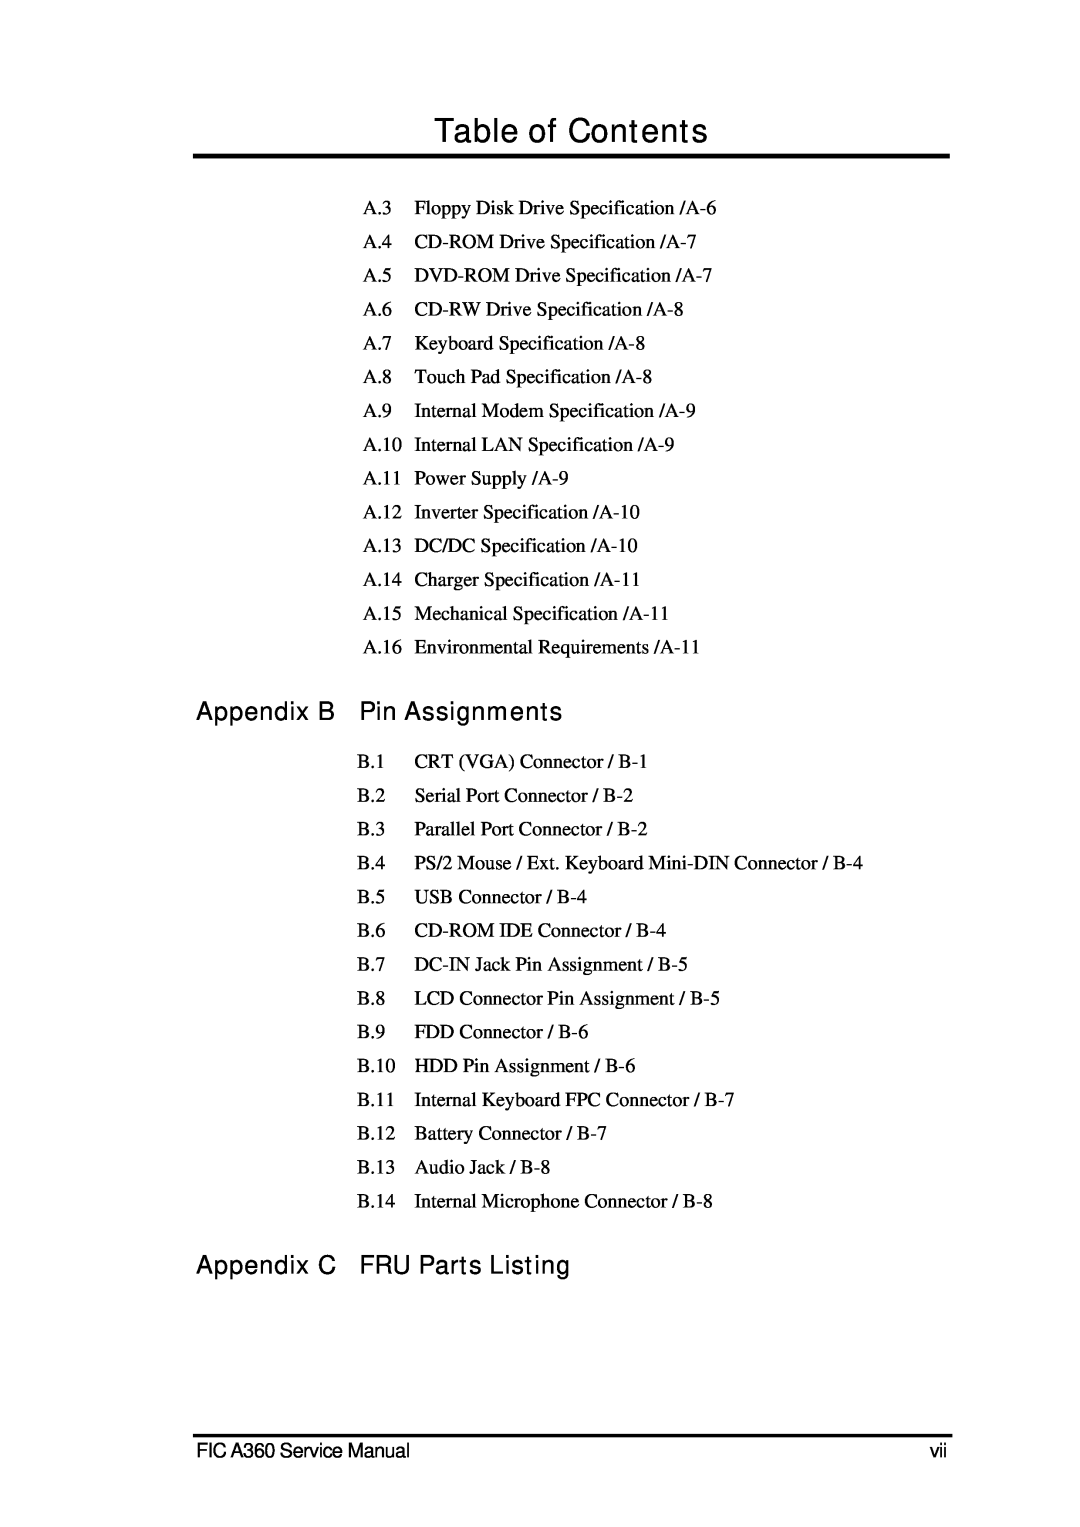 FIC A360 service manual Appendix B Pin Assignments, Appendix C FRU Parts Listing, Table of Contents 